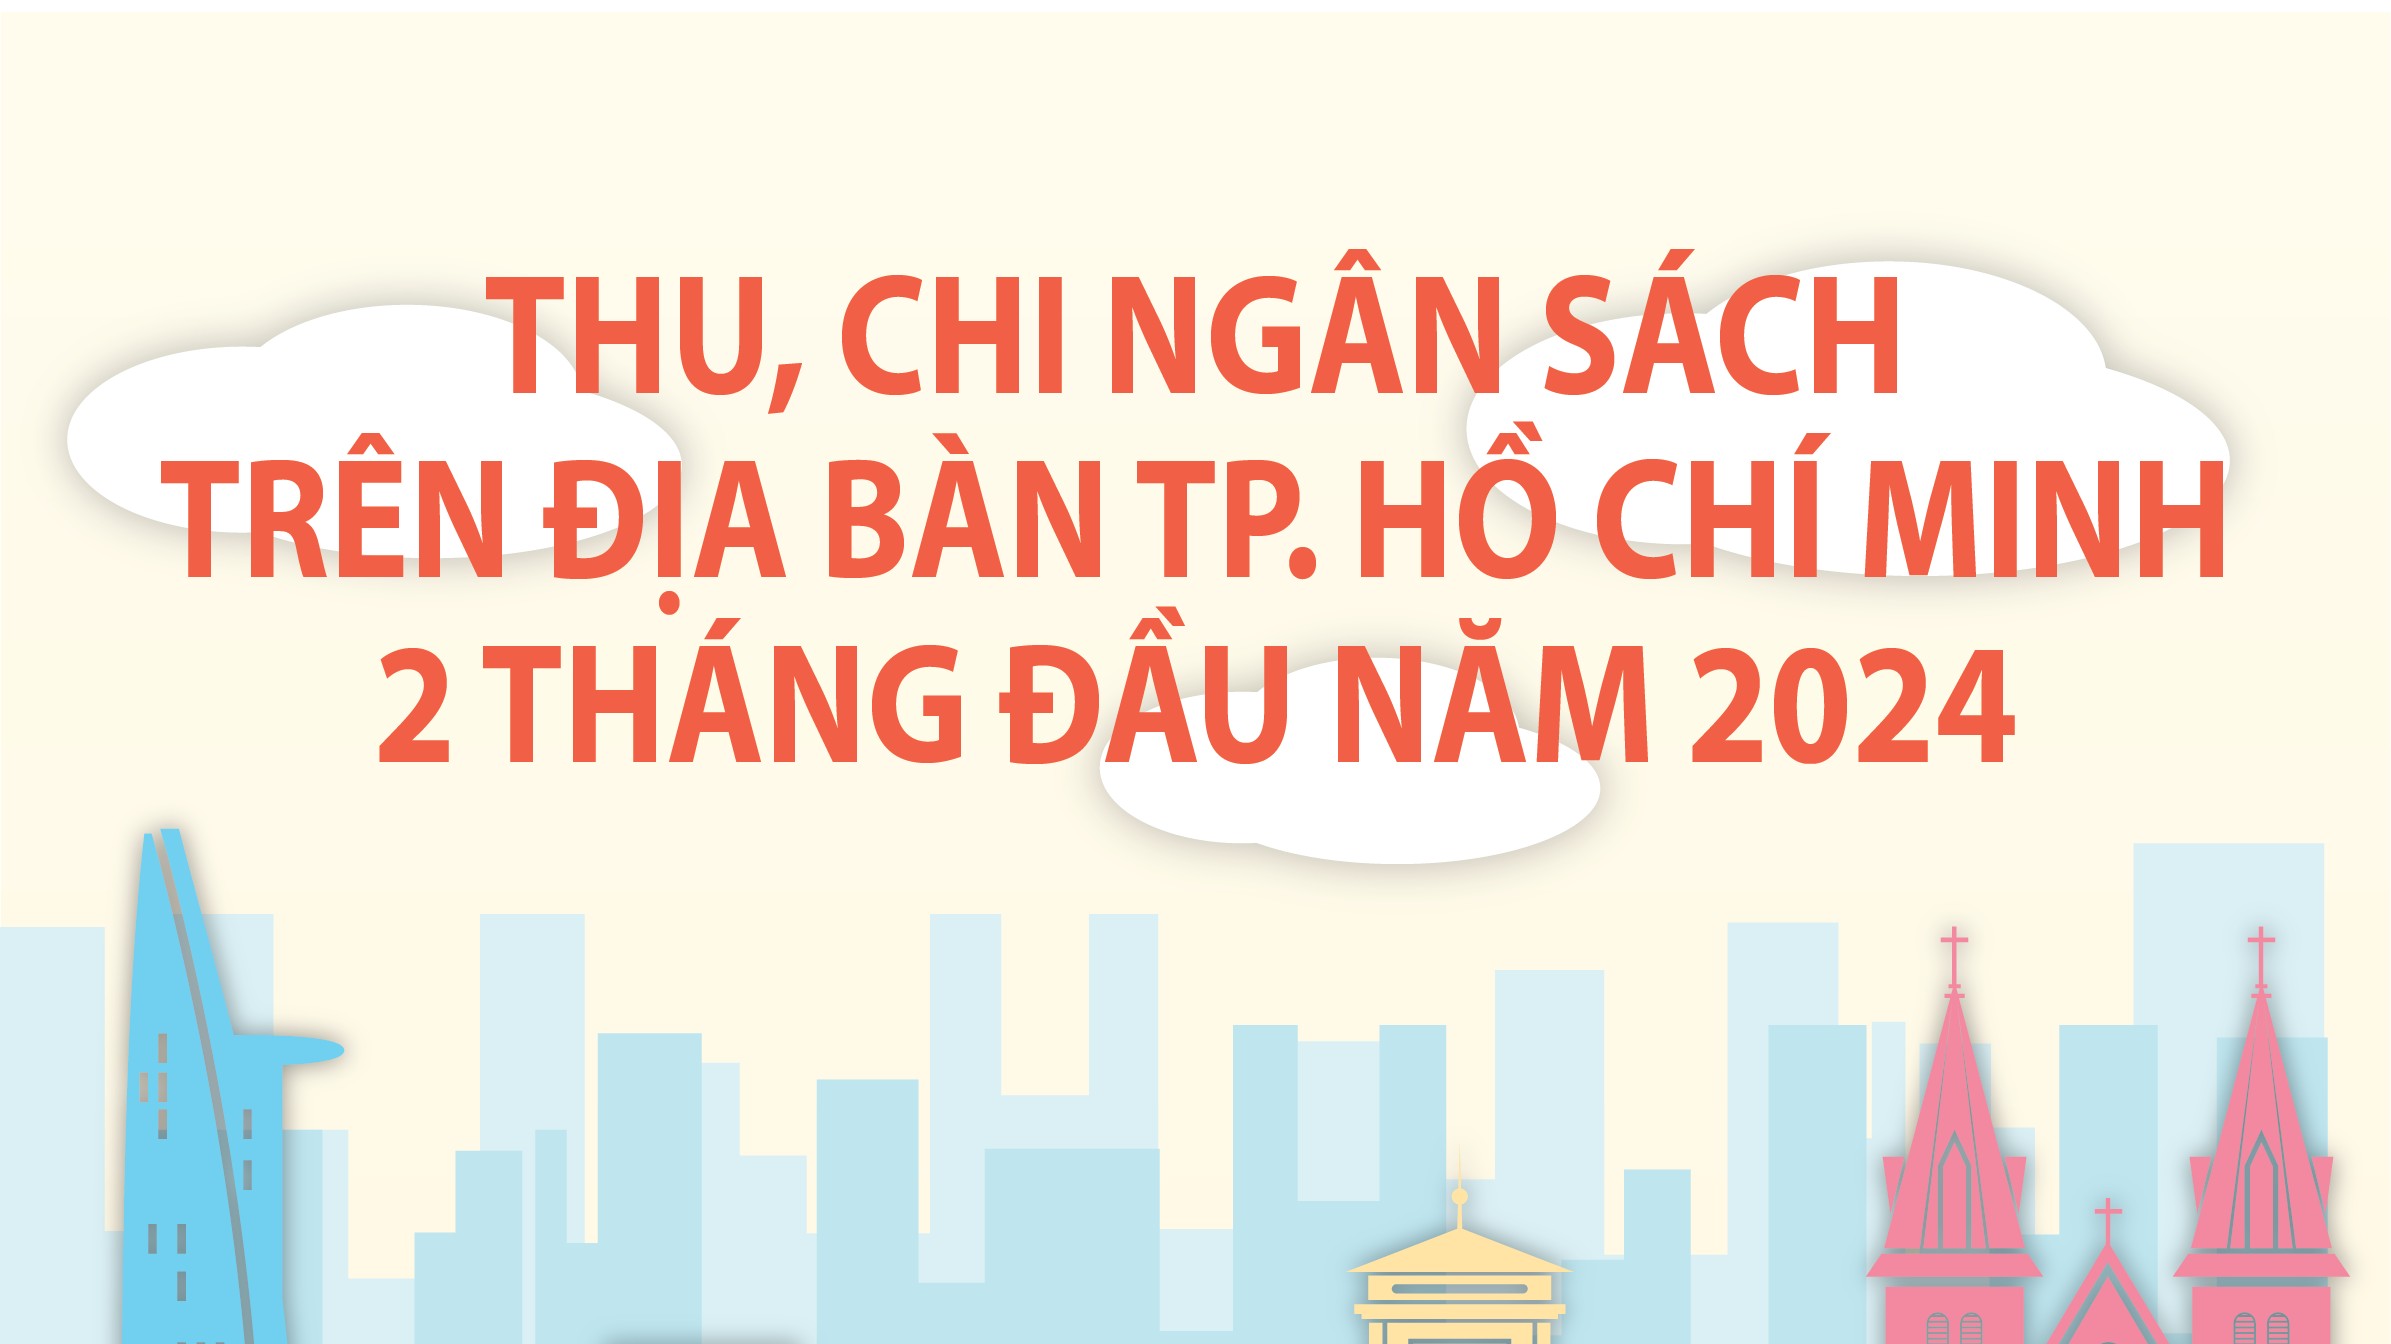 TP. Hồ Chí Minh: Thu ngân sách 2 tháng đầu năm 2024 ước đạt 103.164 tỷ đồng